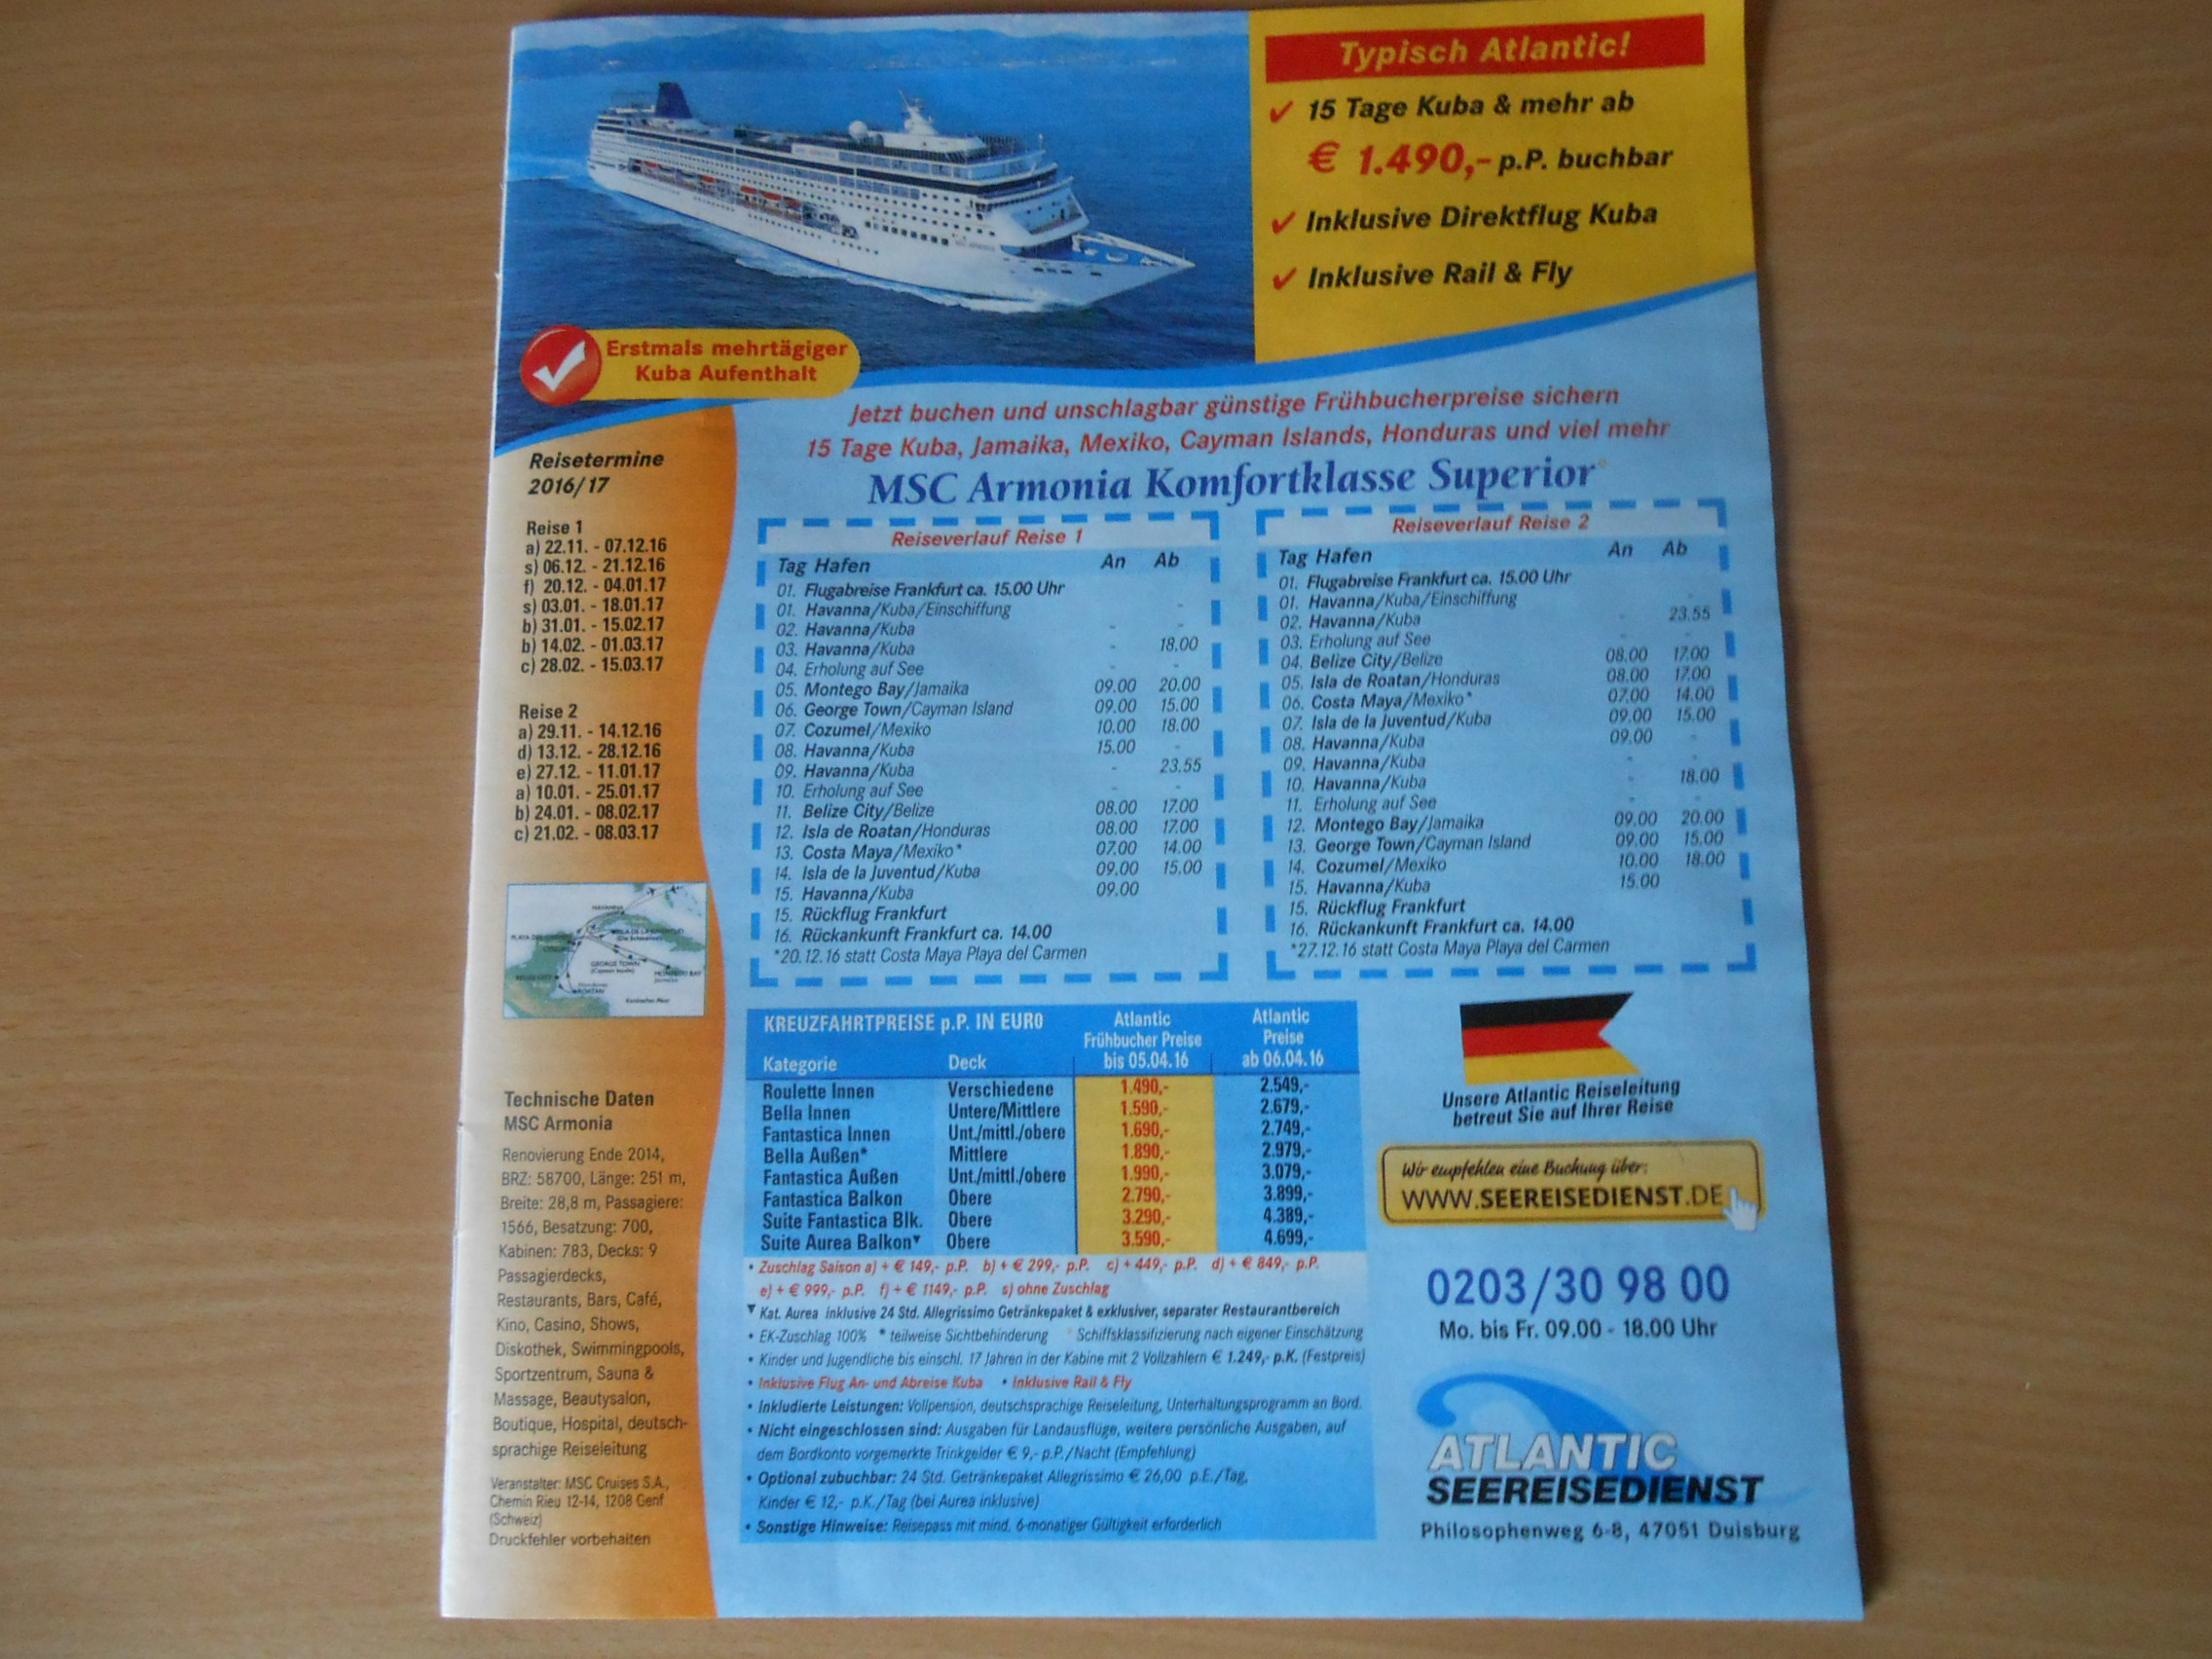 Atlantic - Seereisedienst  in Duisburg